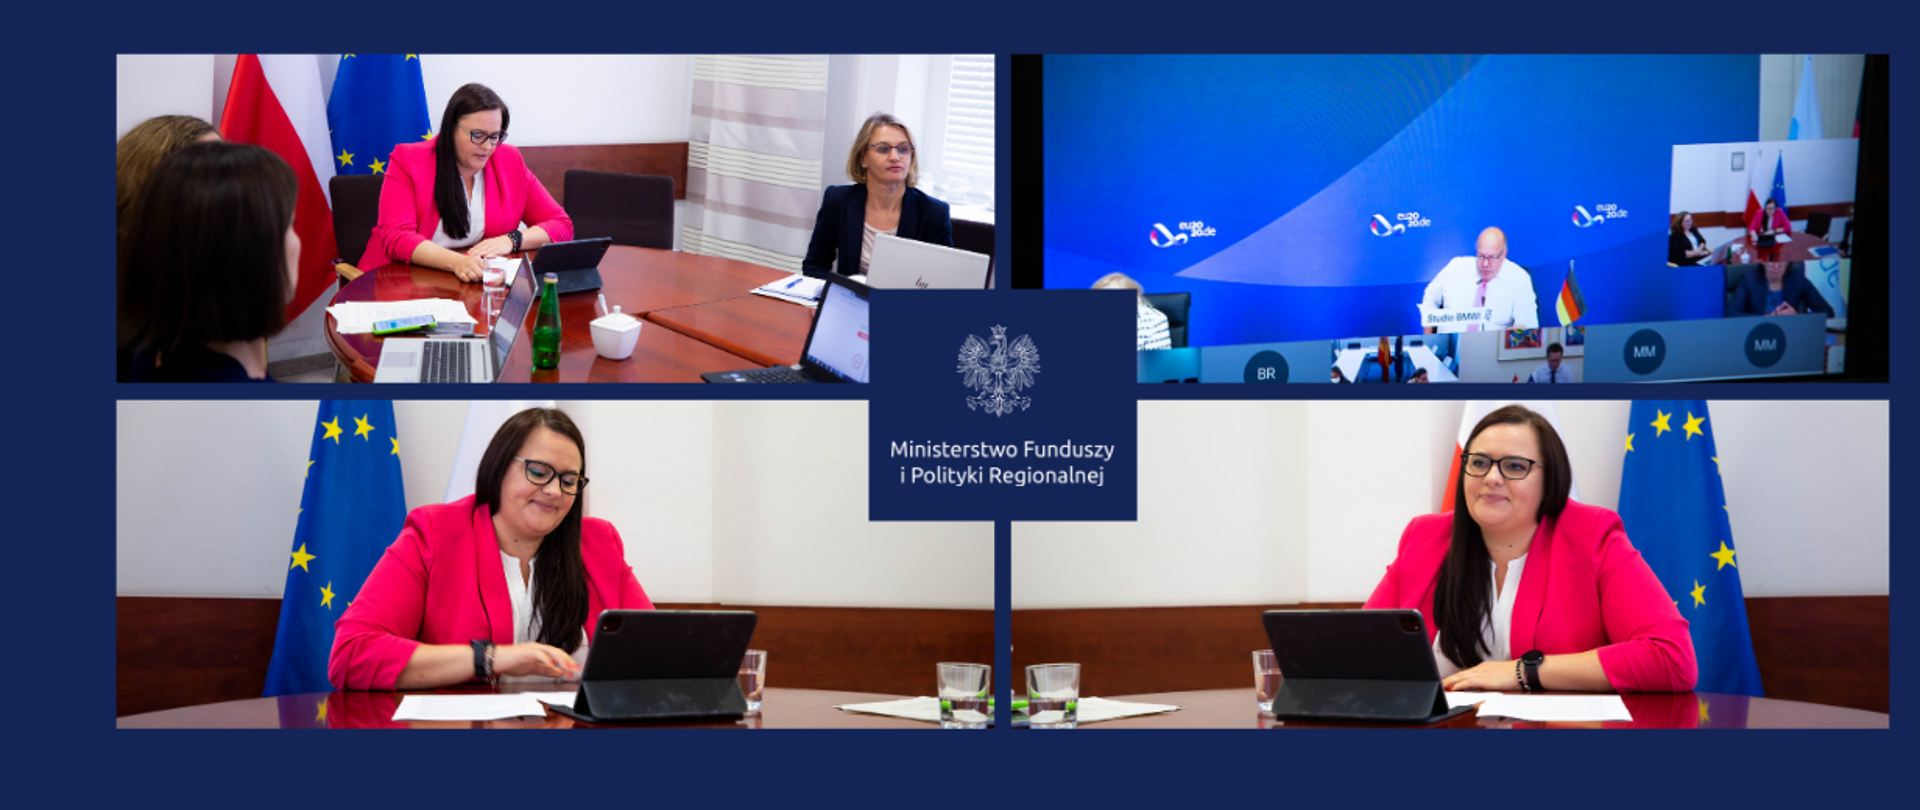 Grafika składa się z 4 zdjęć. Na trzech znajduje się minister Małgorzata Jarosińska-Jedynak siedząca przy biurku, przy laptopie. Na jednym ze zdjęć towarzyszą jej trzy kobiety. Czwarte zdjęcie przedstawia mężczyznę i dwie kobiety, siedzących za stołem konferencyjnym.